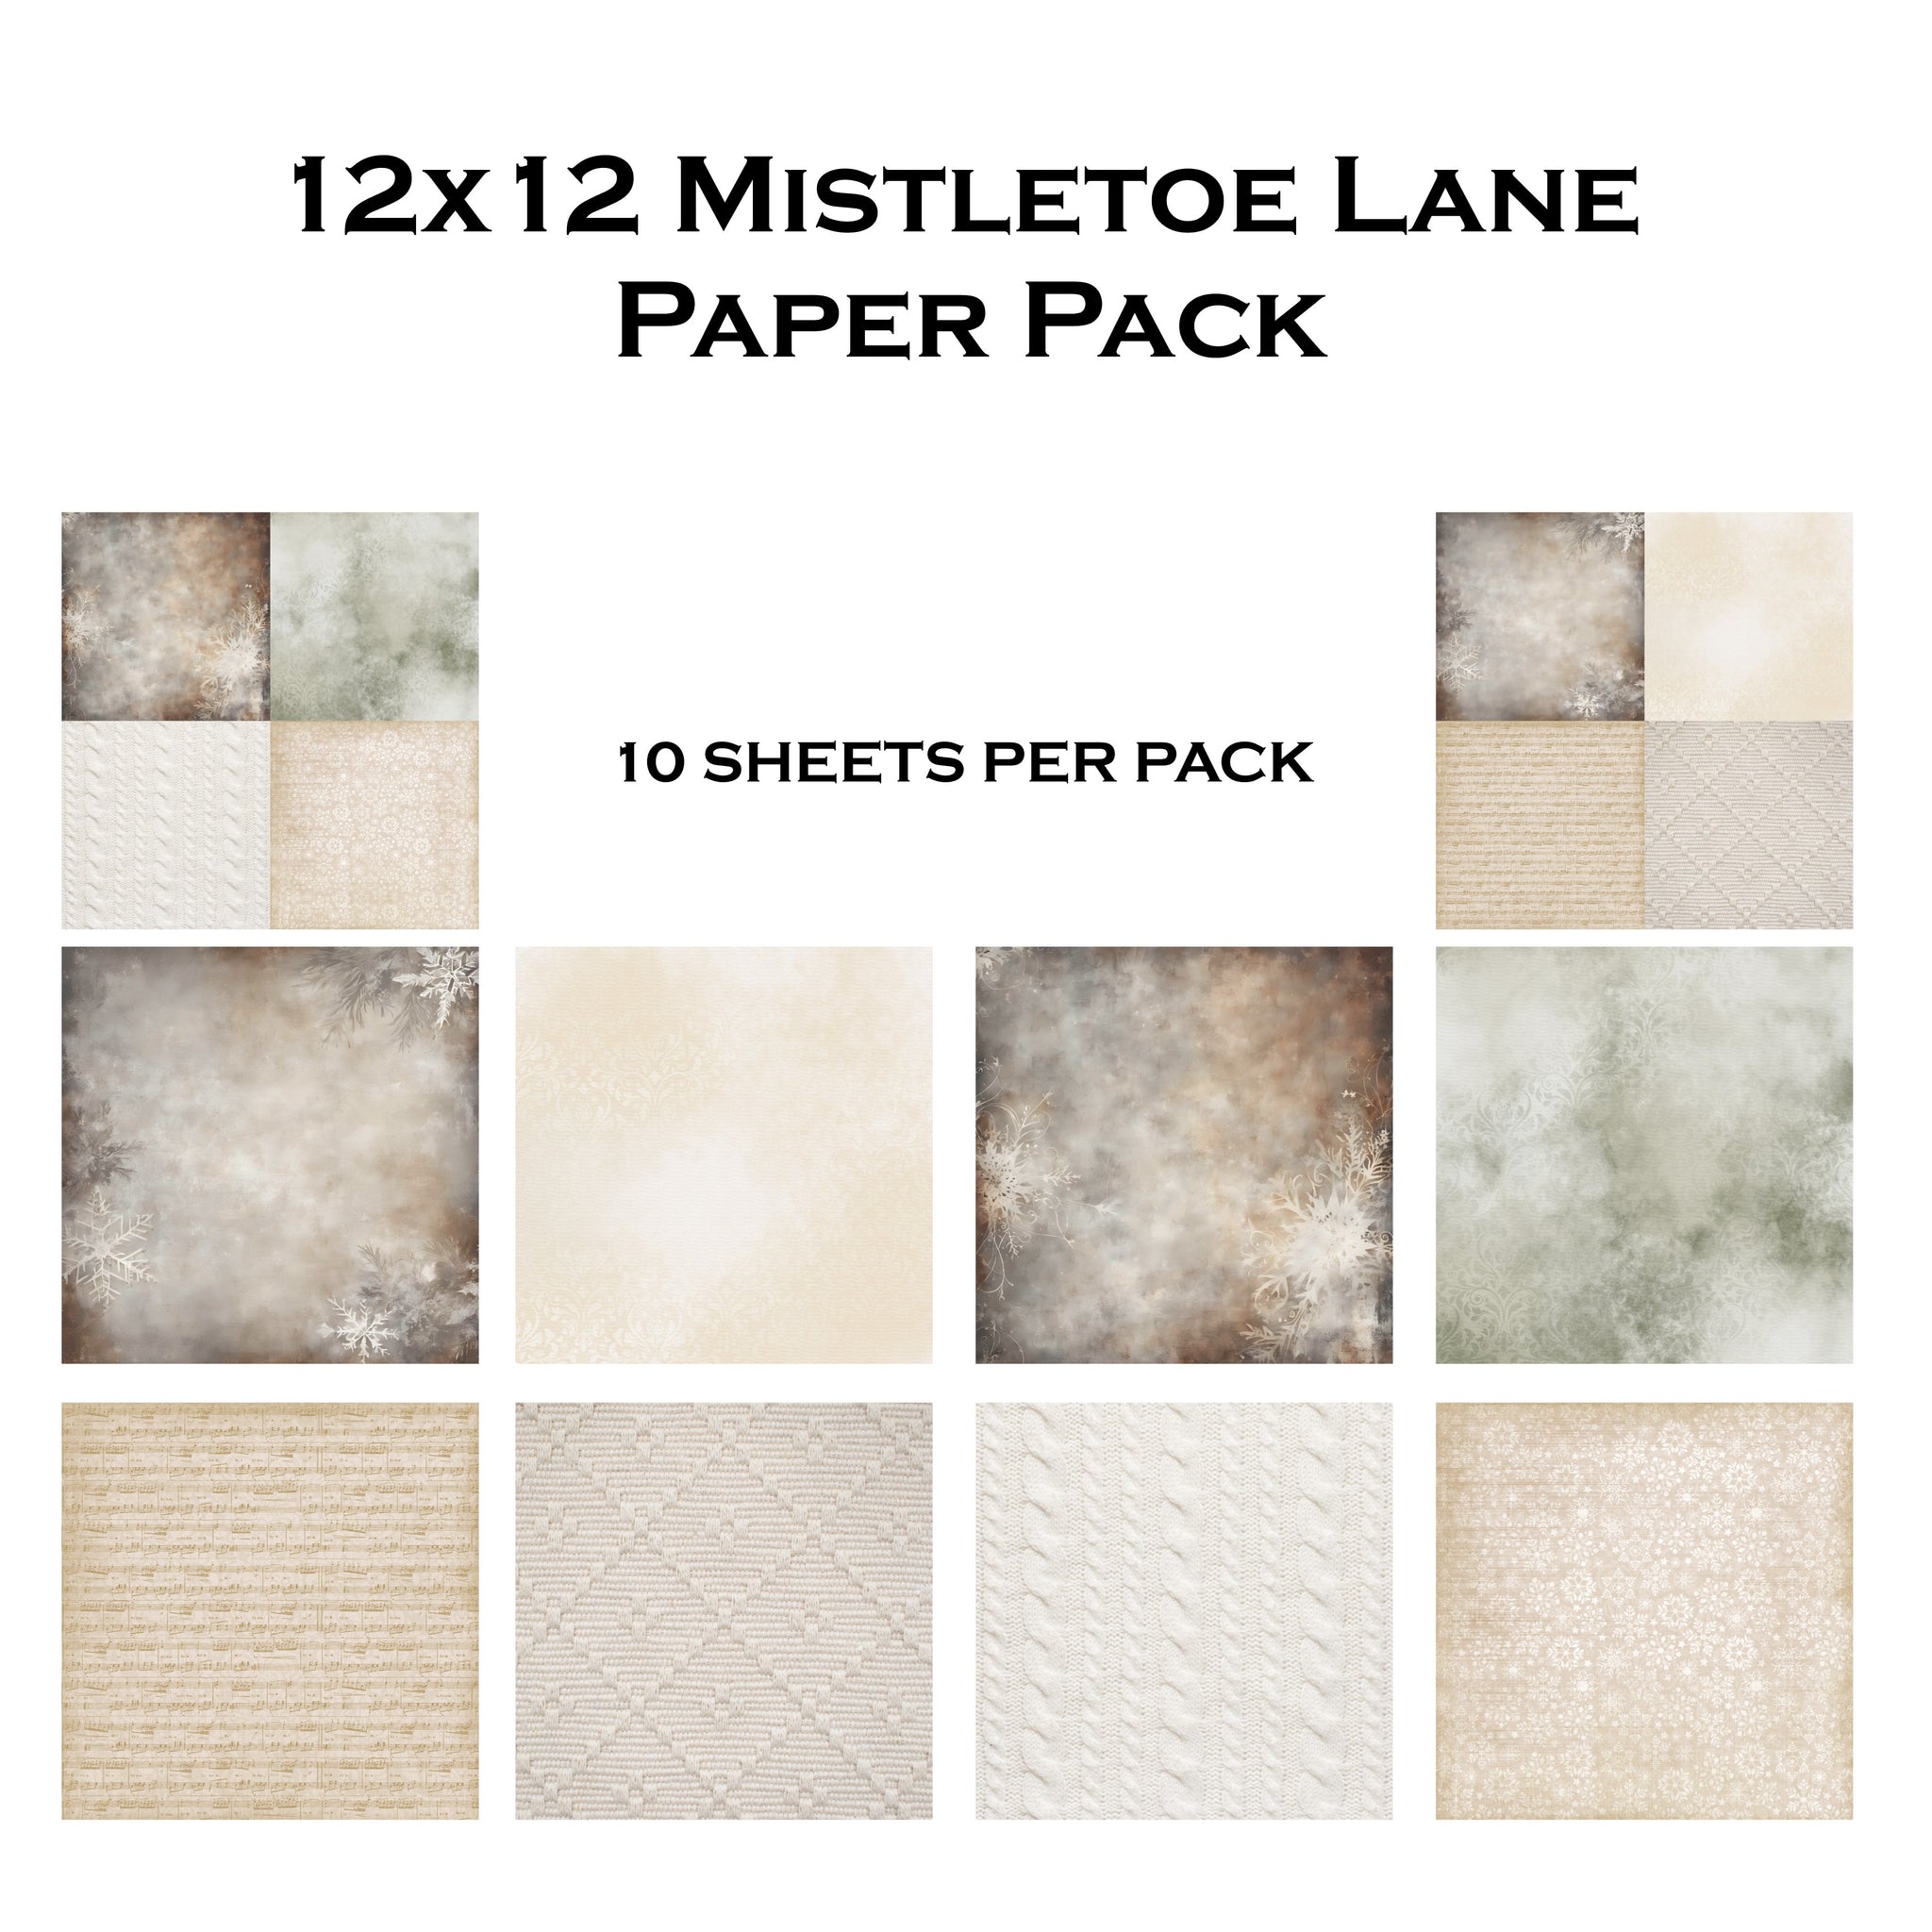 Mistletoe Lane 12x12 Paper Pack